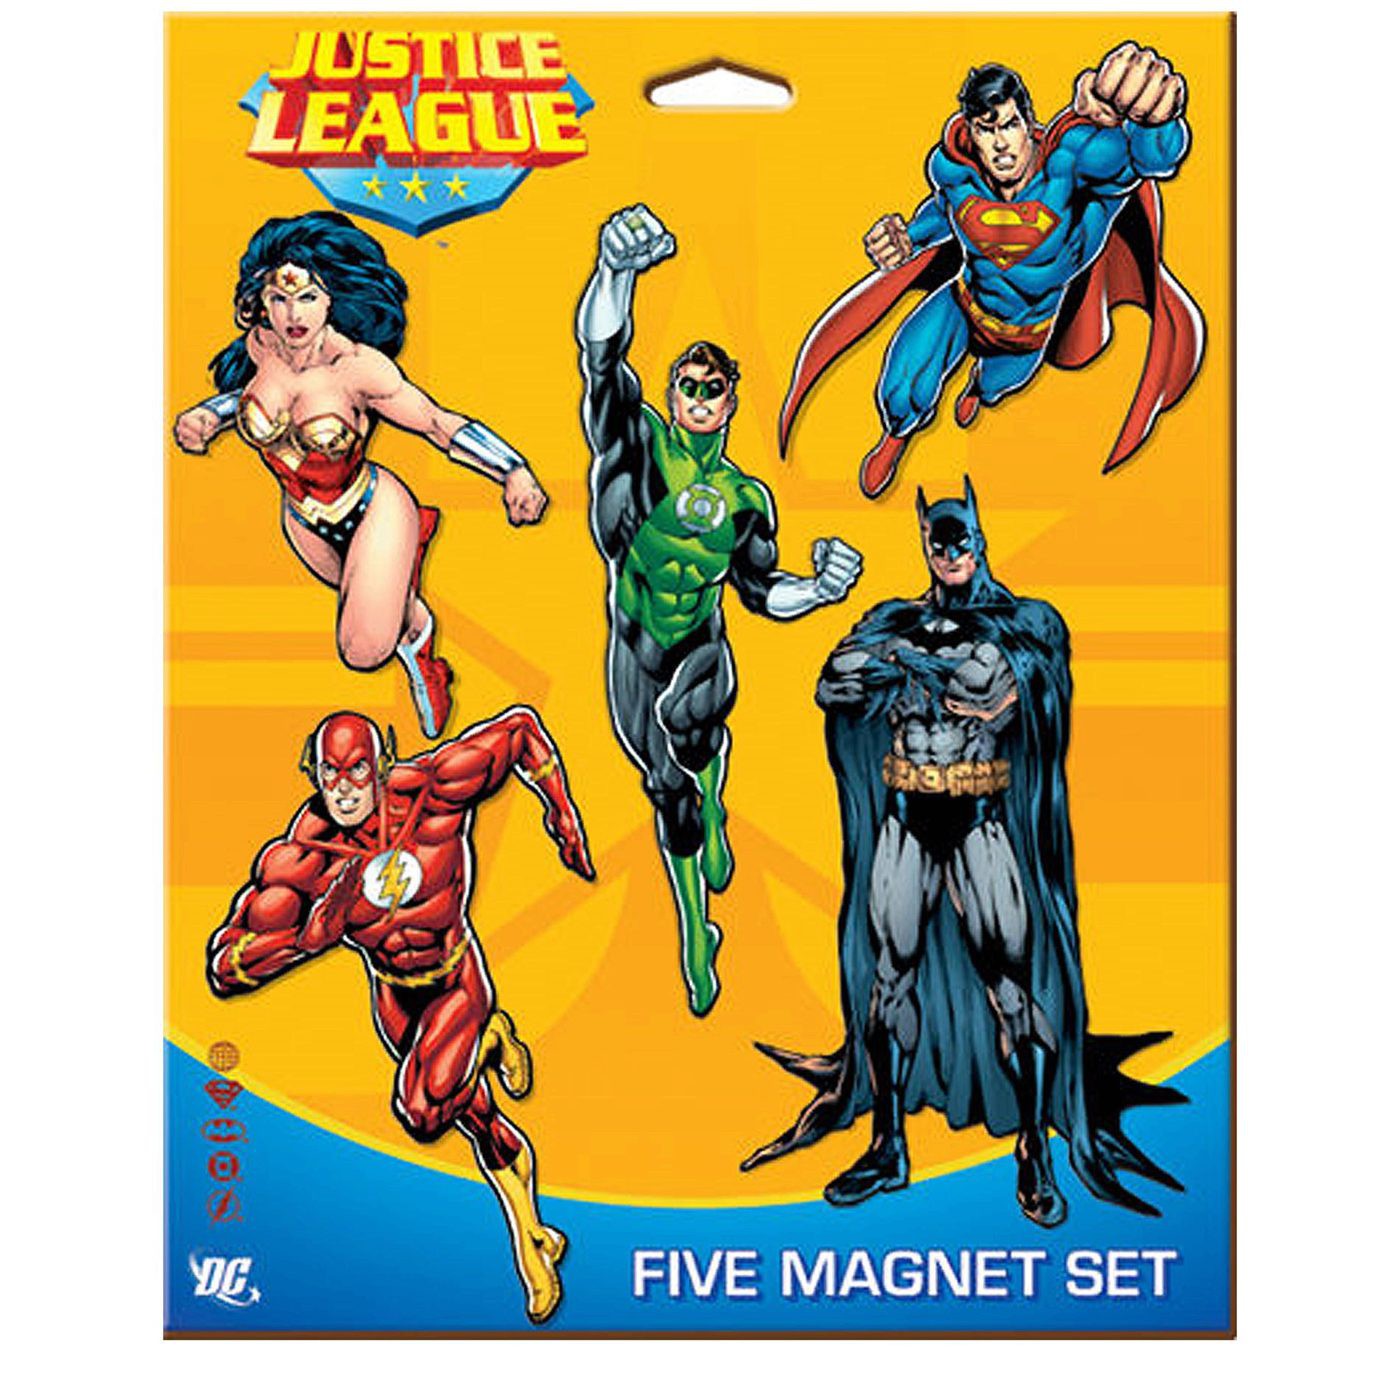 Justice League Five Magnet Set